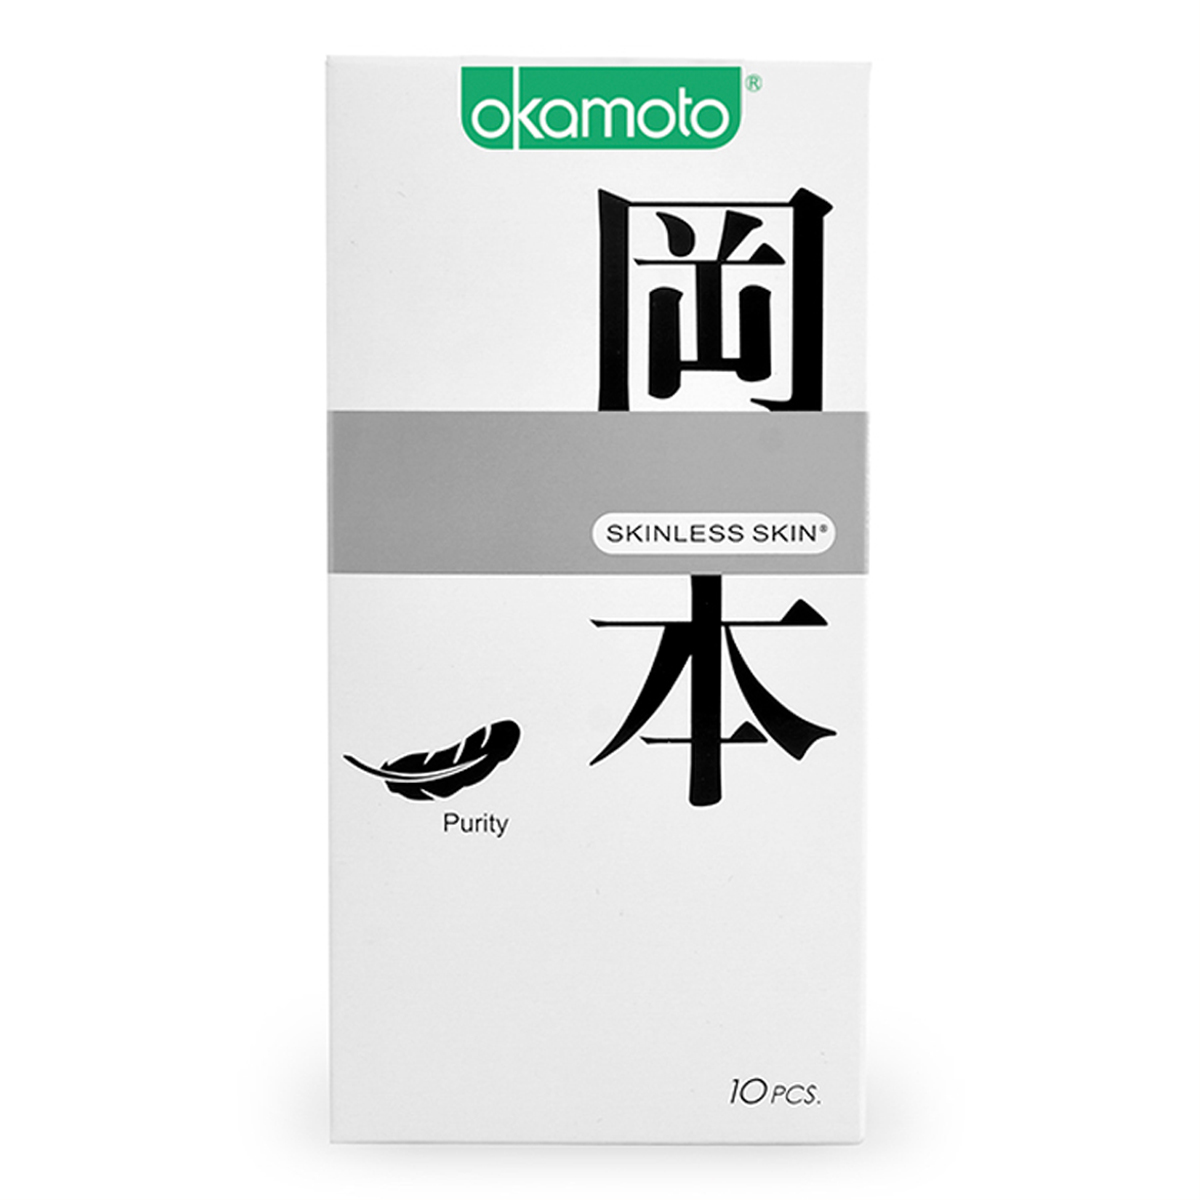 Bao cao su tinh khiết,Sáng bóng mềm mại Okamoto Skinless Skin Purity -10's với độ mỏng chỉ 53mm được làm từ mủ cao su thiên nhiên cao cấp, đáp ứng các yêu cầu và điều kiện sản xuất nghiêm ngặt, đảm bảo an toàn tối đa cho người sử dụng.